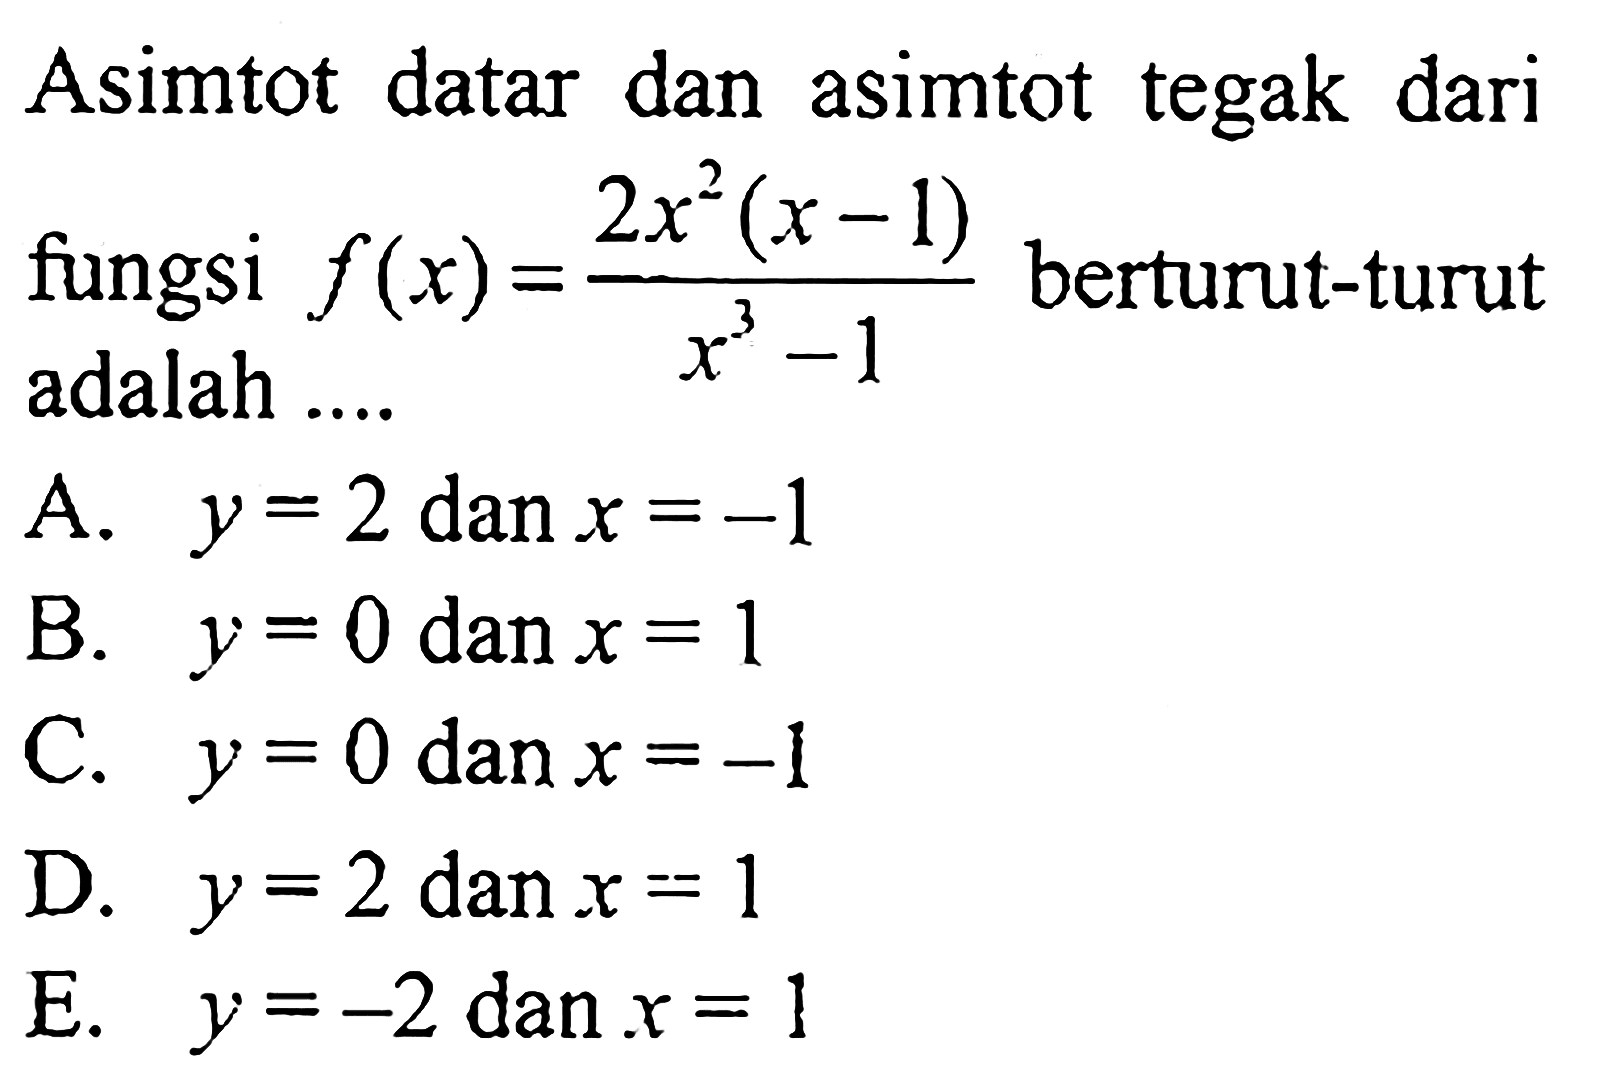 Asimtot datar dan asimtot tegak dari fungsi  f(x)=(2x^2(x-1))/(x^3-1) berturut-turut adalah ....